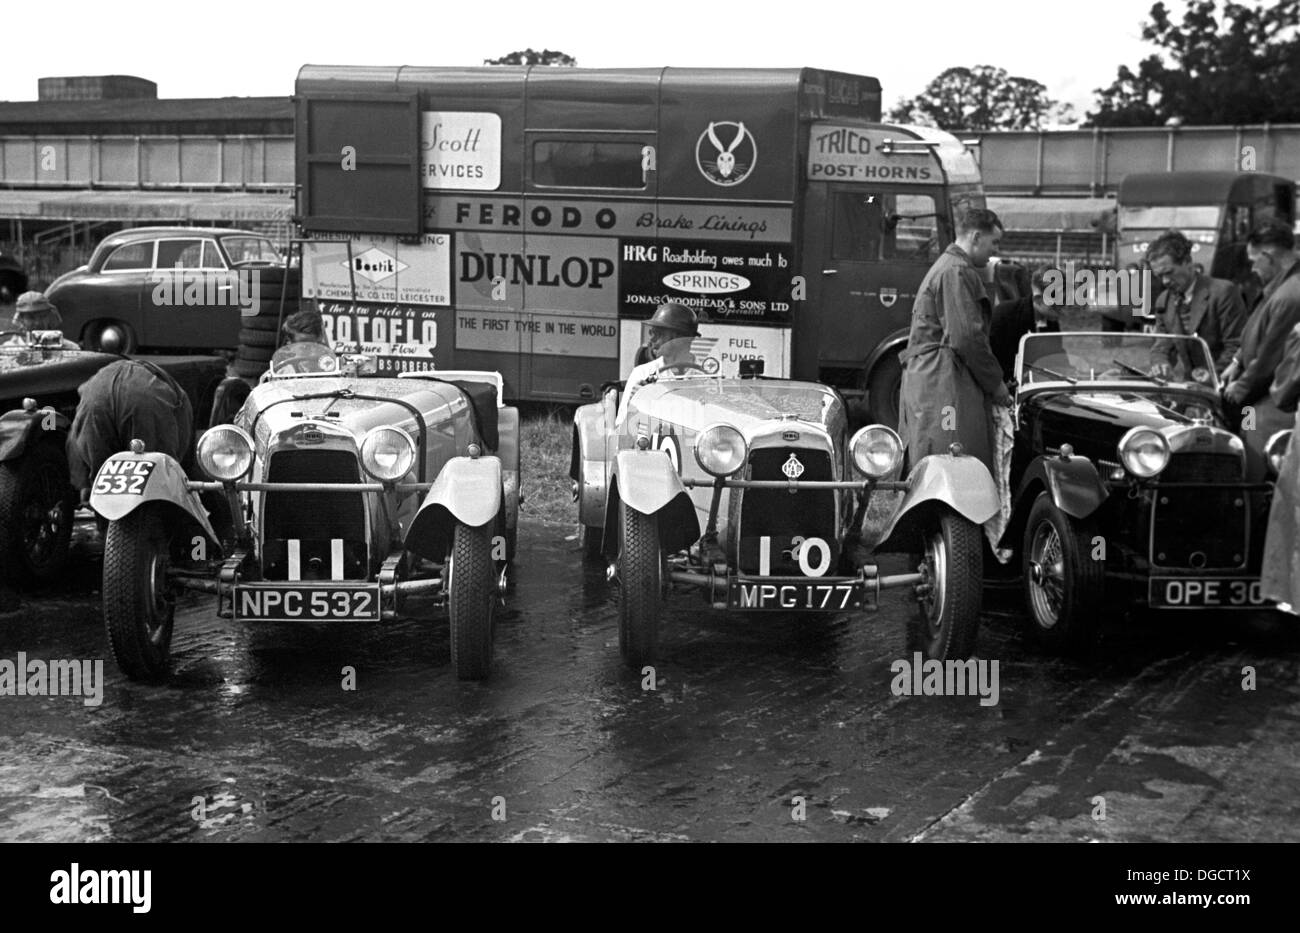 HRG voitures dans le paddock pour l'International Trophy à Silverstone, Angleterre 1950. Banque D'Images